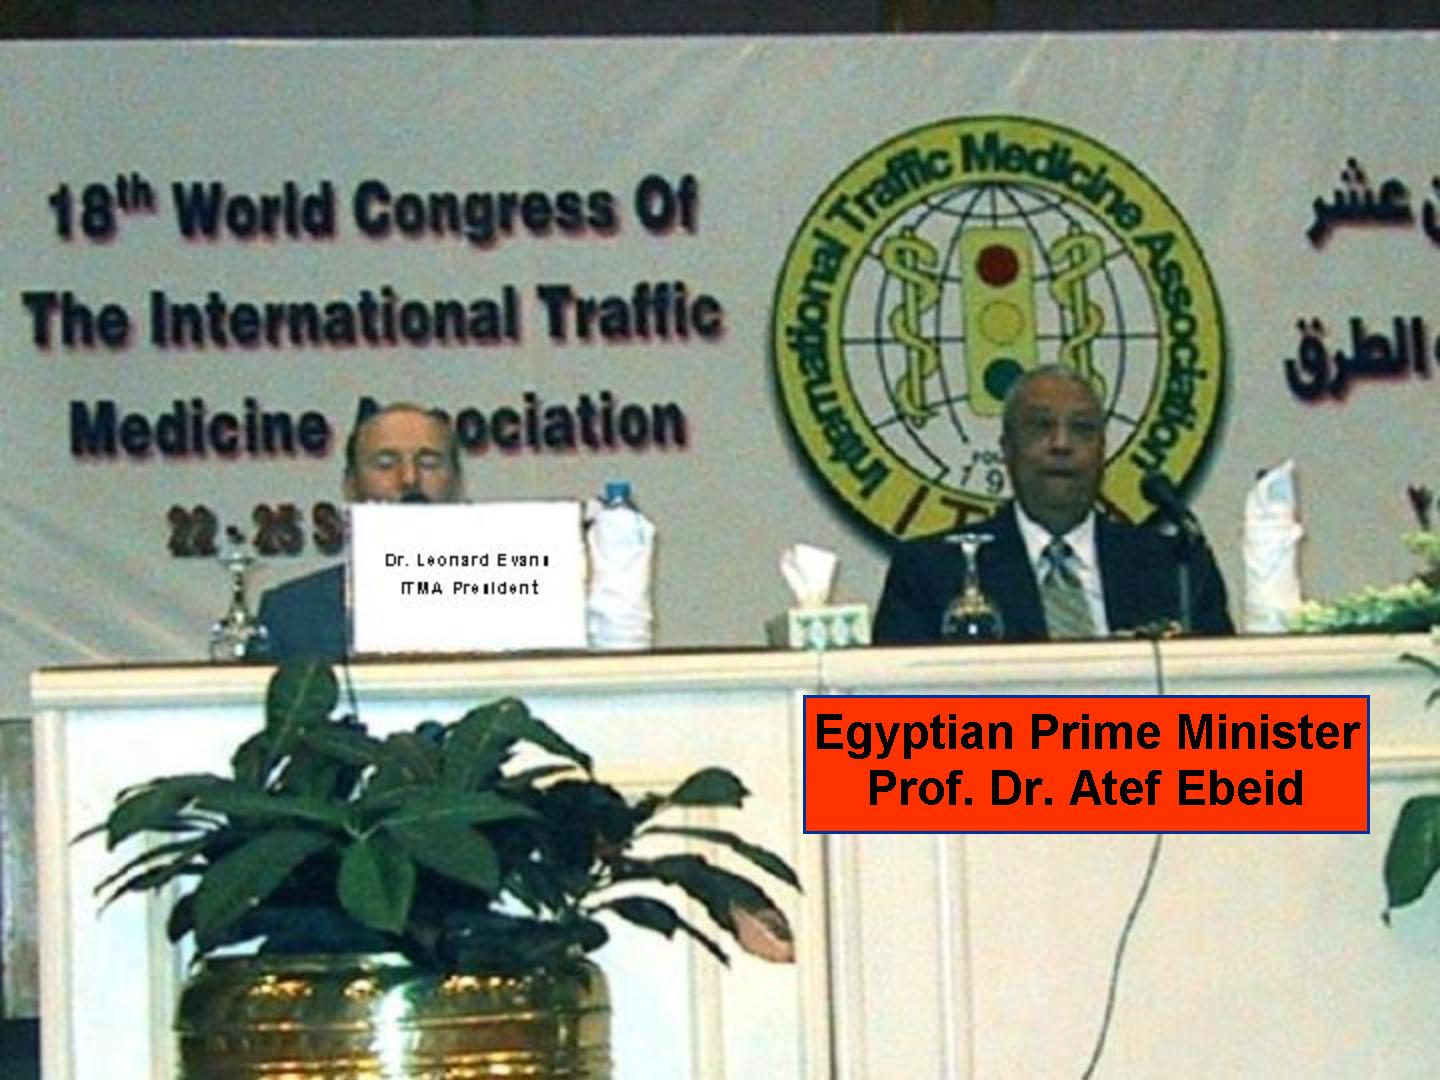 ITMA President Dr. Leonard Evans and Egyptian Prime Minister Prof. Dr. Atef Ebeid